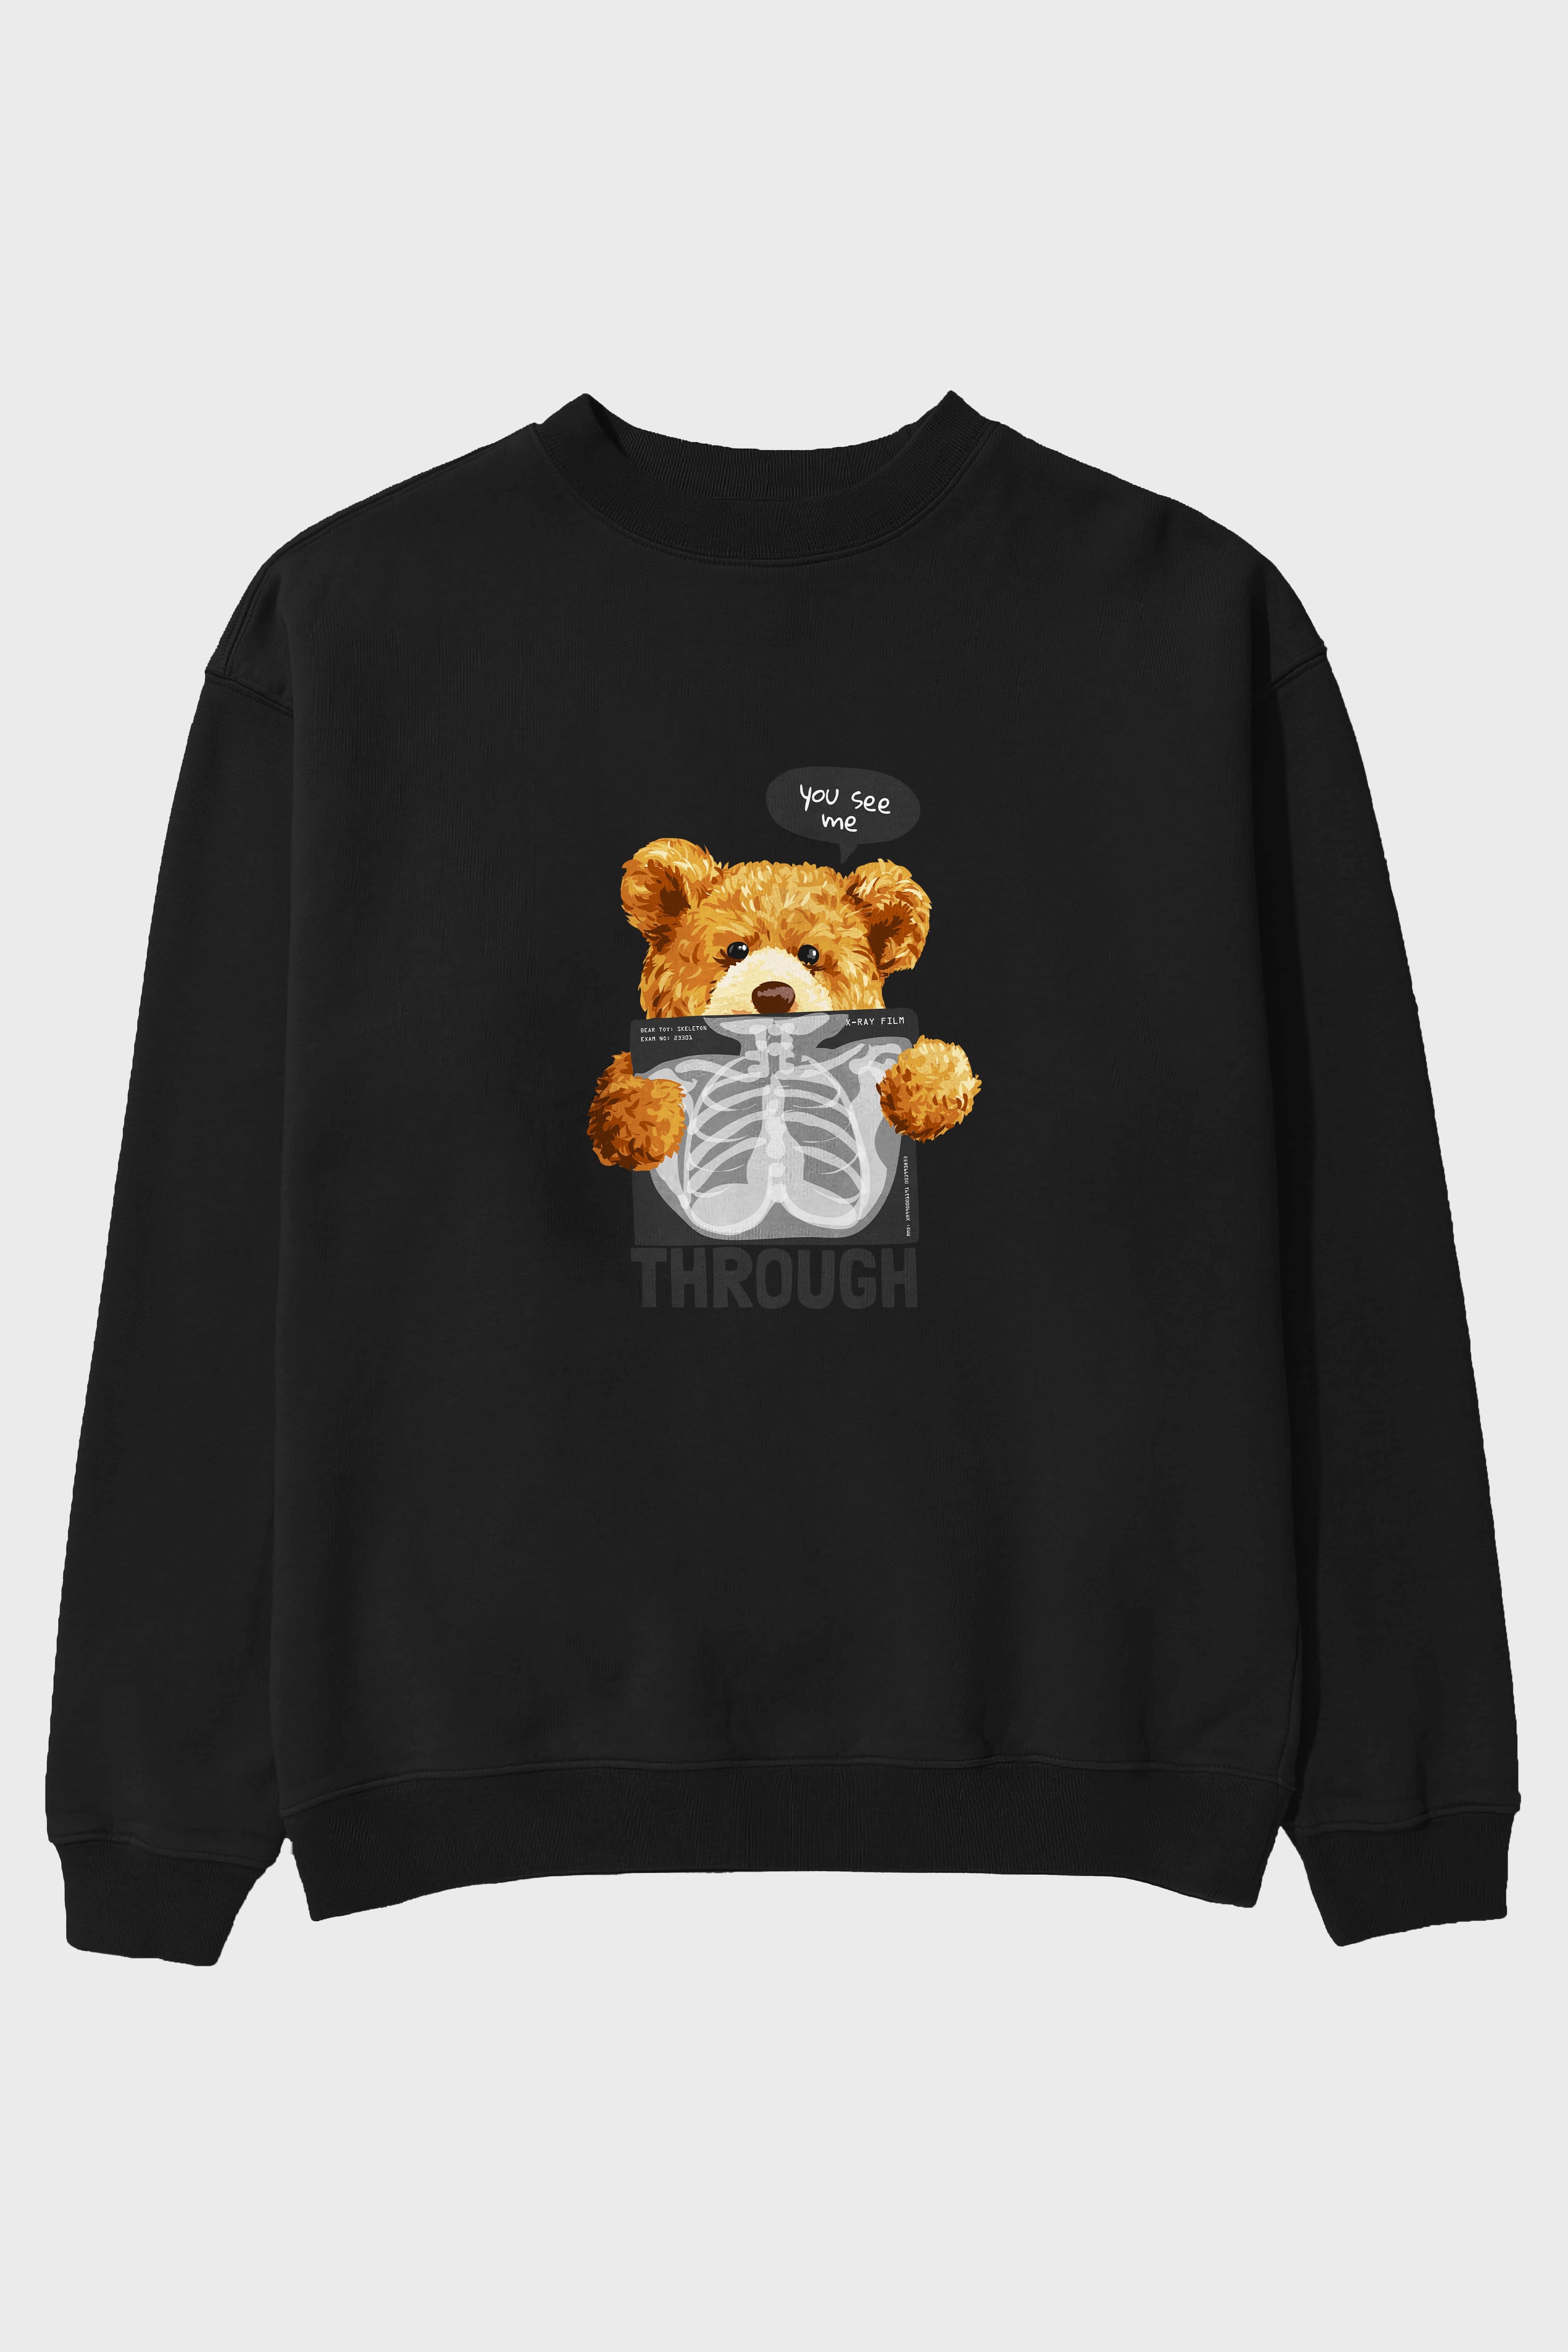 Teddy Bear Trough Ön Baskılı Oversize Sweatshirt Erkek Kadın Unisex